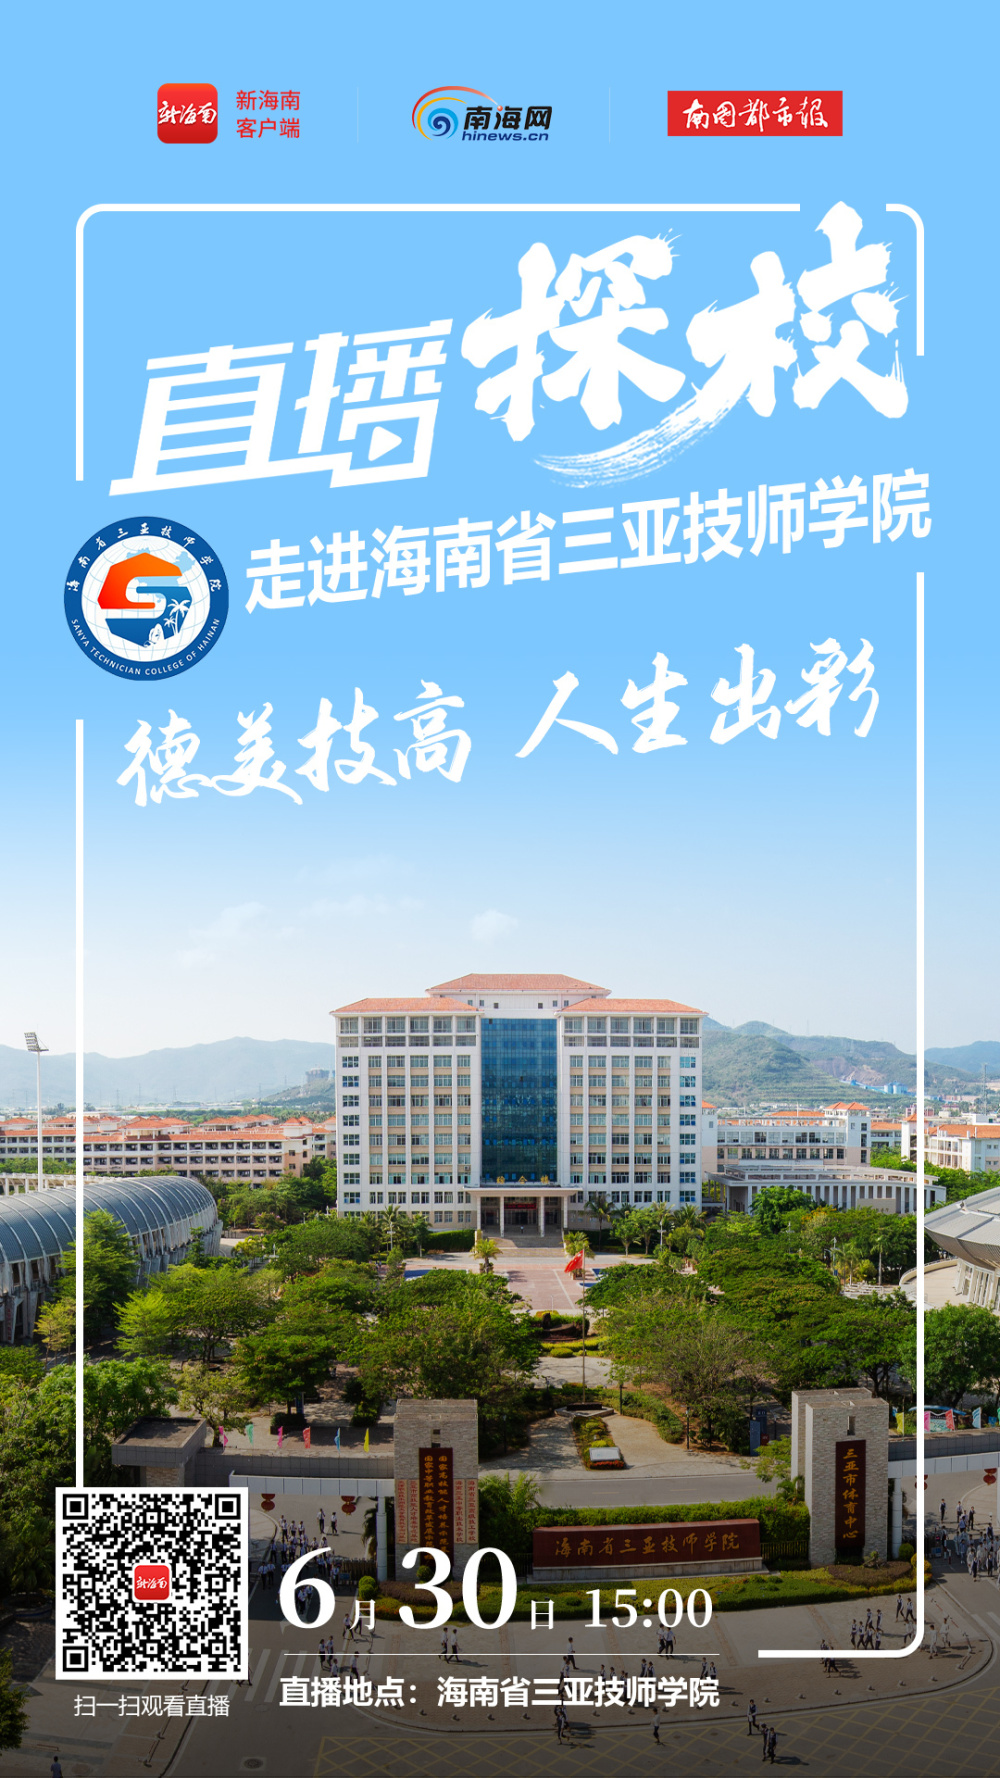 镇江技师学院校徽图片